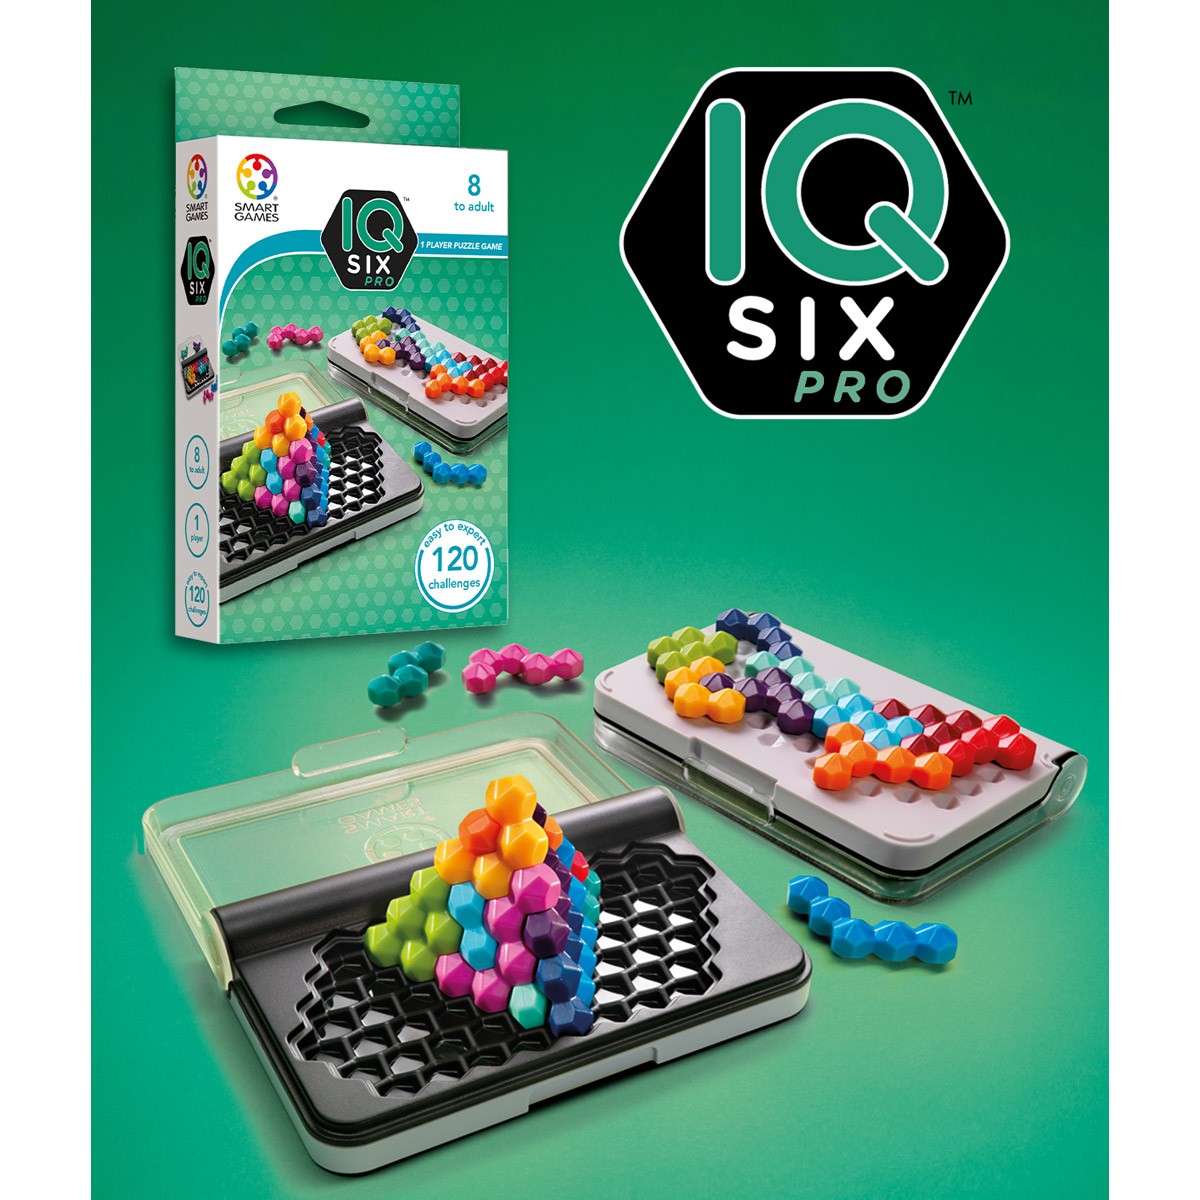 Goût du jeu - IQ Arrows, le petit nouveau de chez Smart Games ainsi que la  collection IQ, IQ Puzzler Pro, IQ Stars et le dernier livret magnétique  Dauphins Joueurs sont disponibles. //